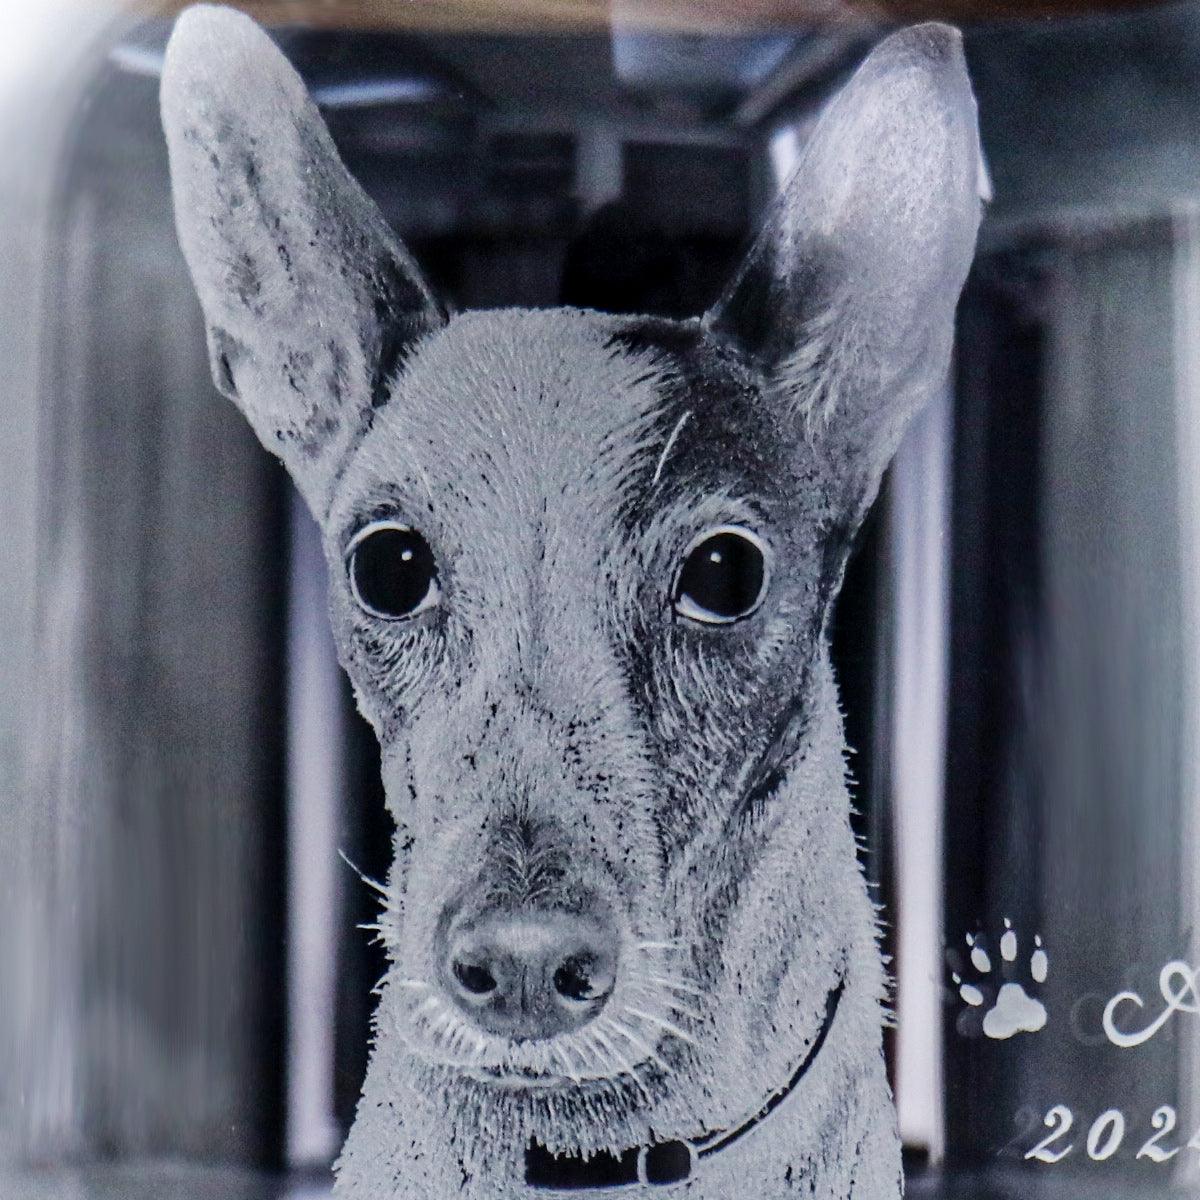 10cm【狗狗骨灰罐】(狗掌版)客製寵物畫像 適合小型毛小孩在天堂明亮純淨的家